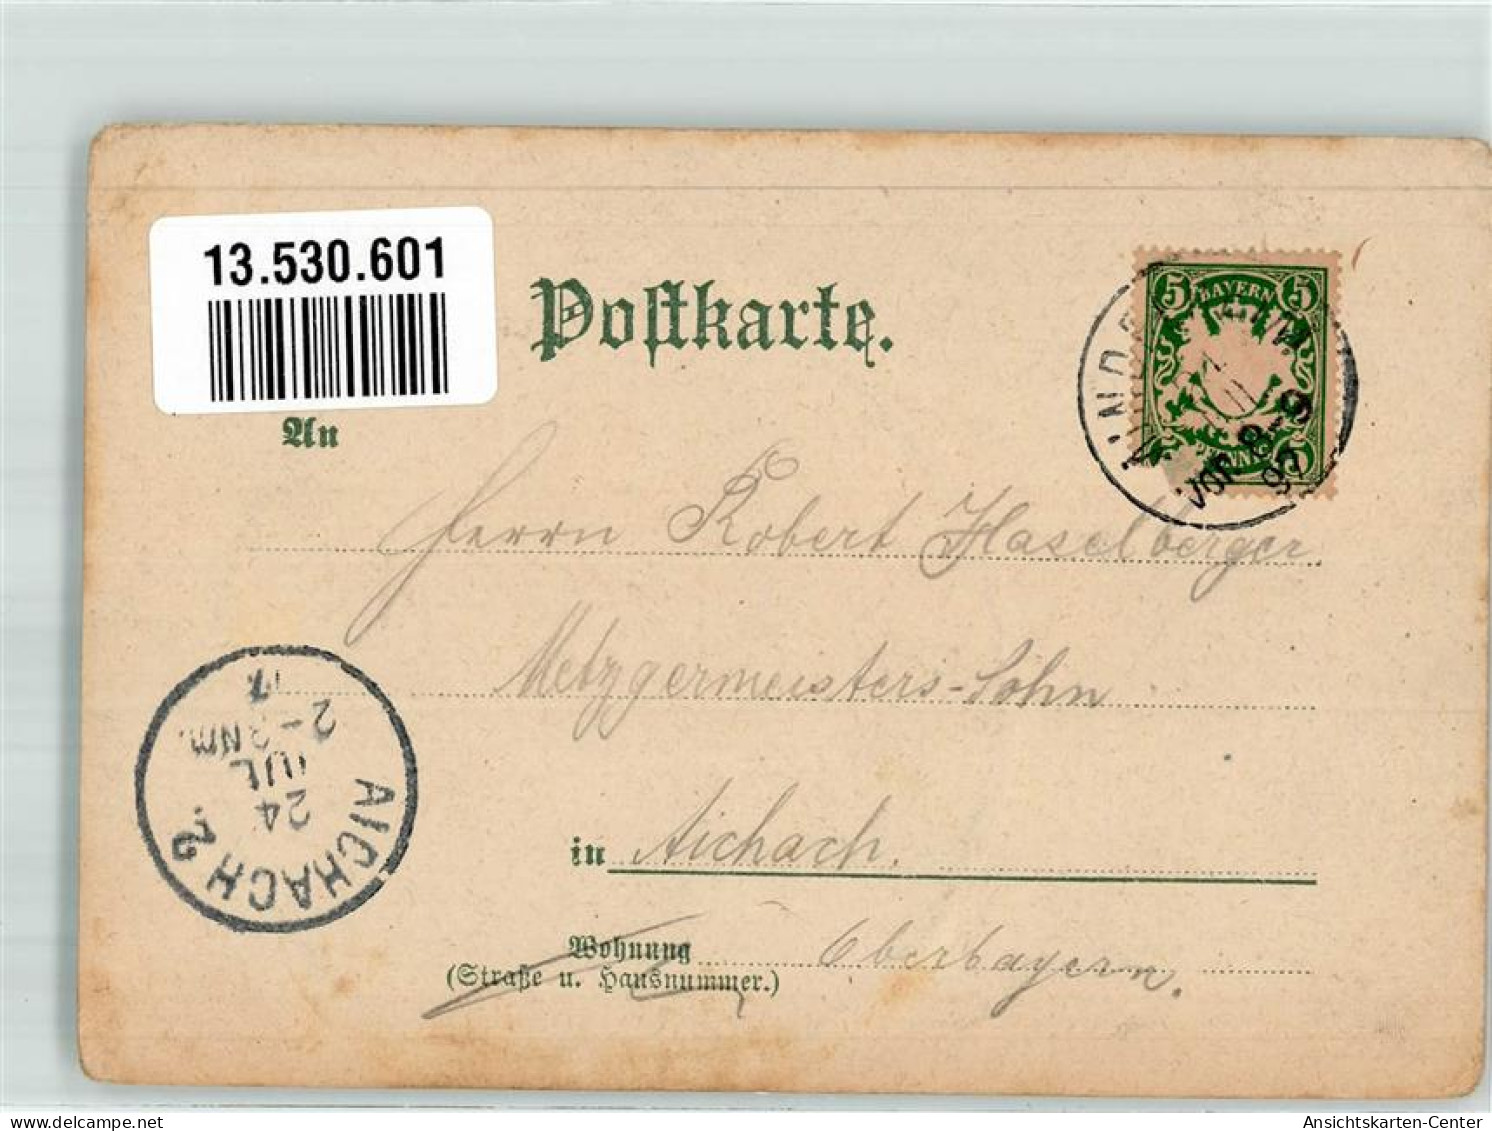 13530601 - Mindelheim - Mindelheim